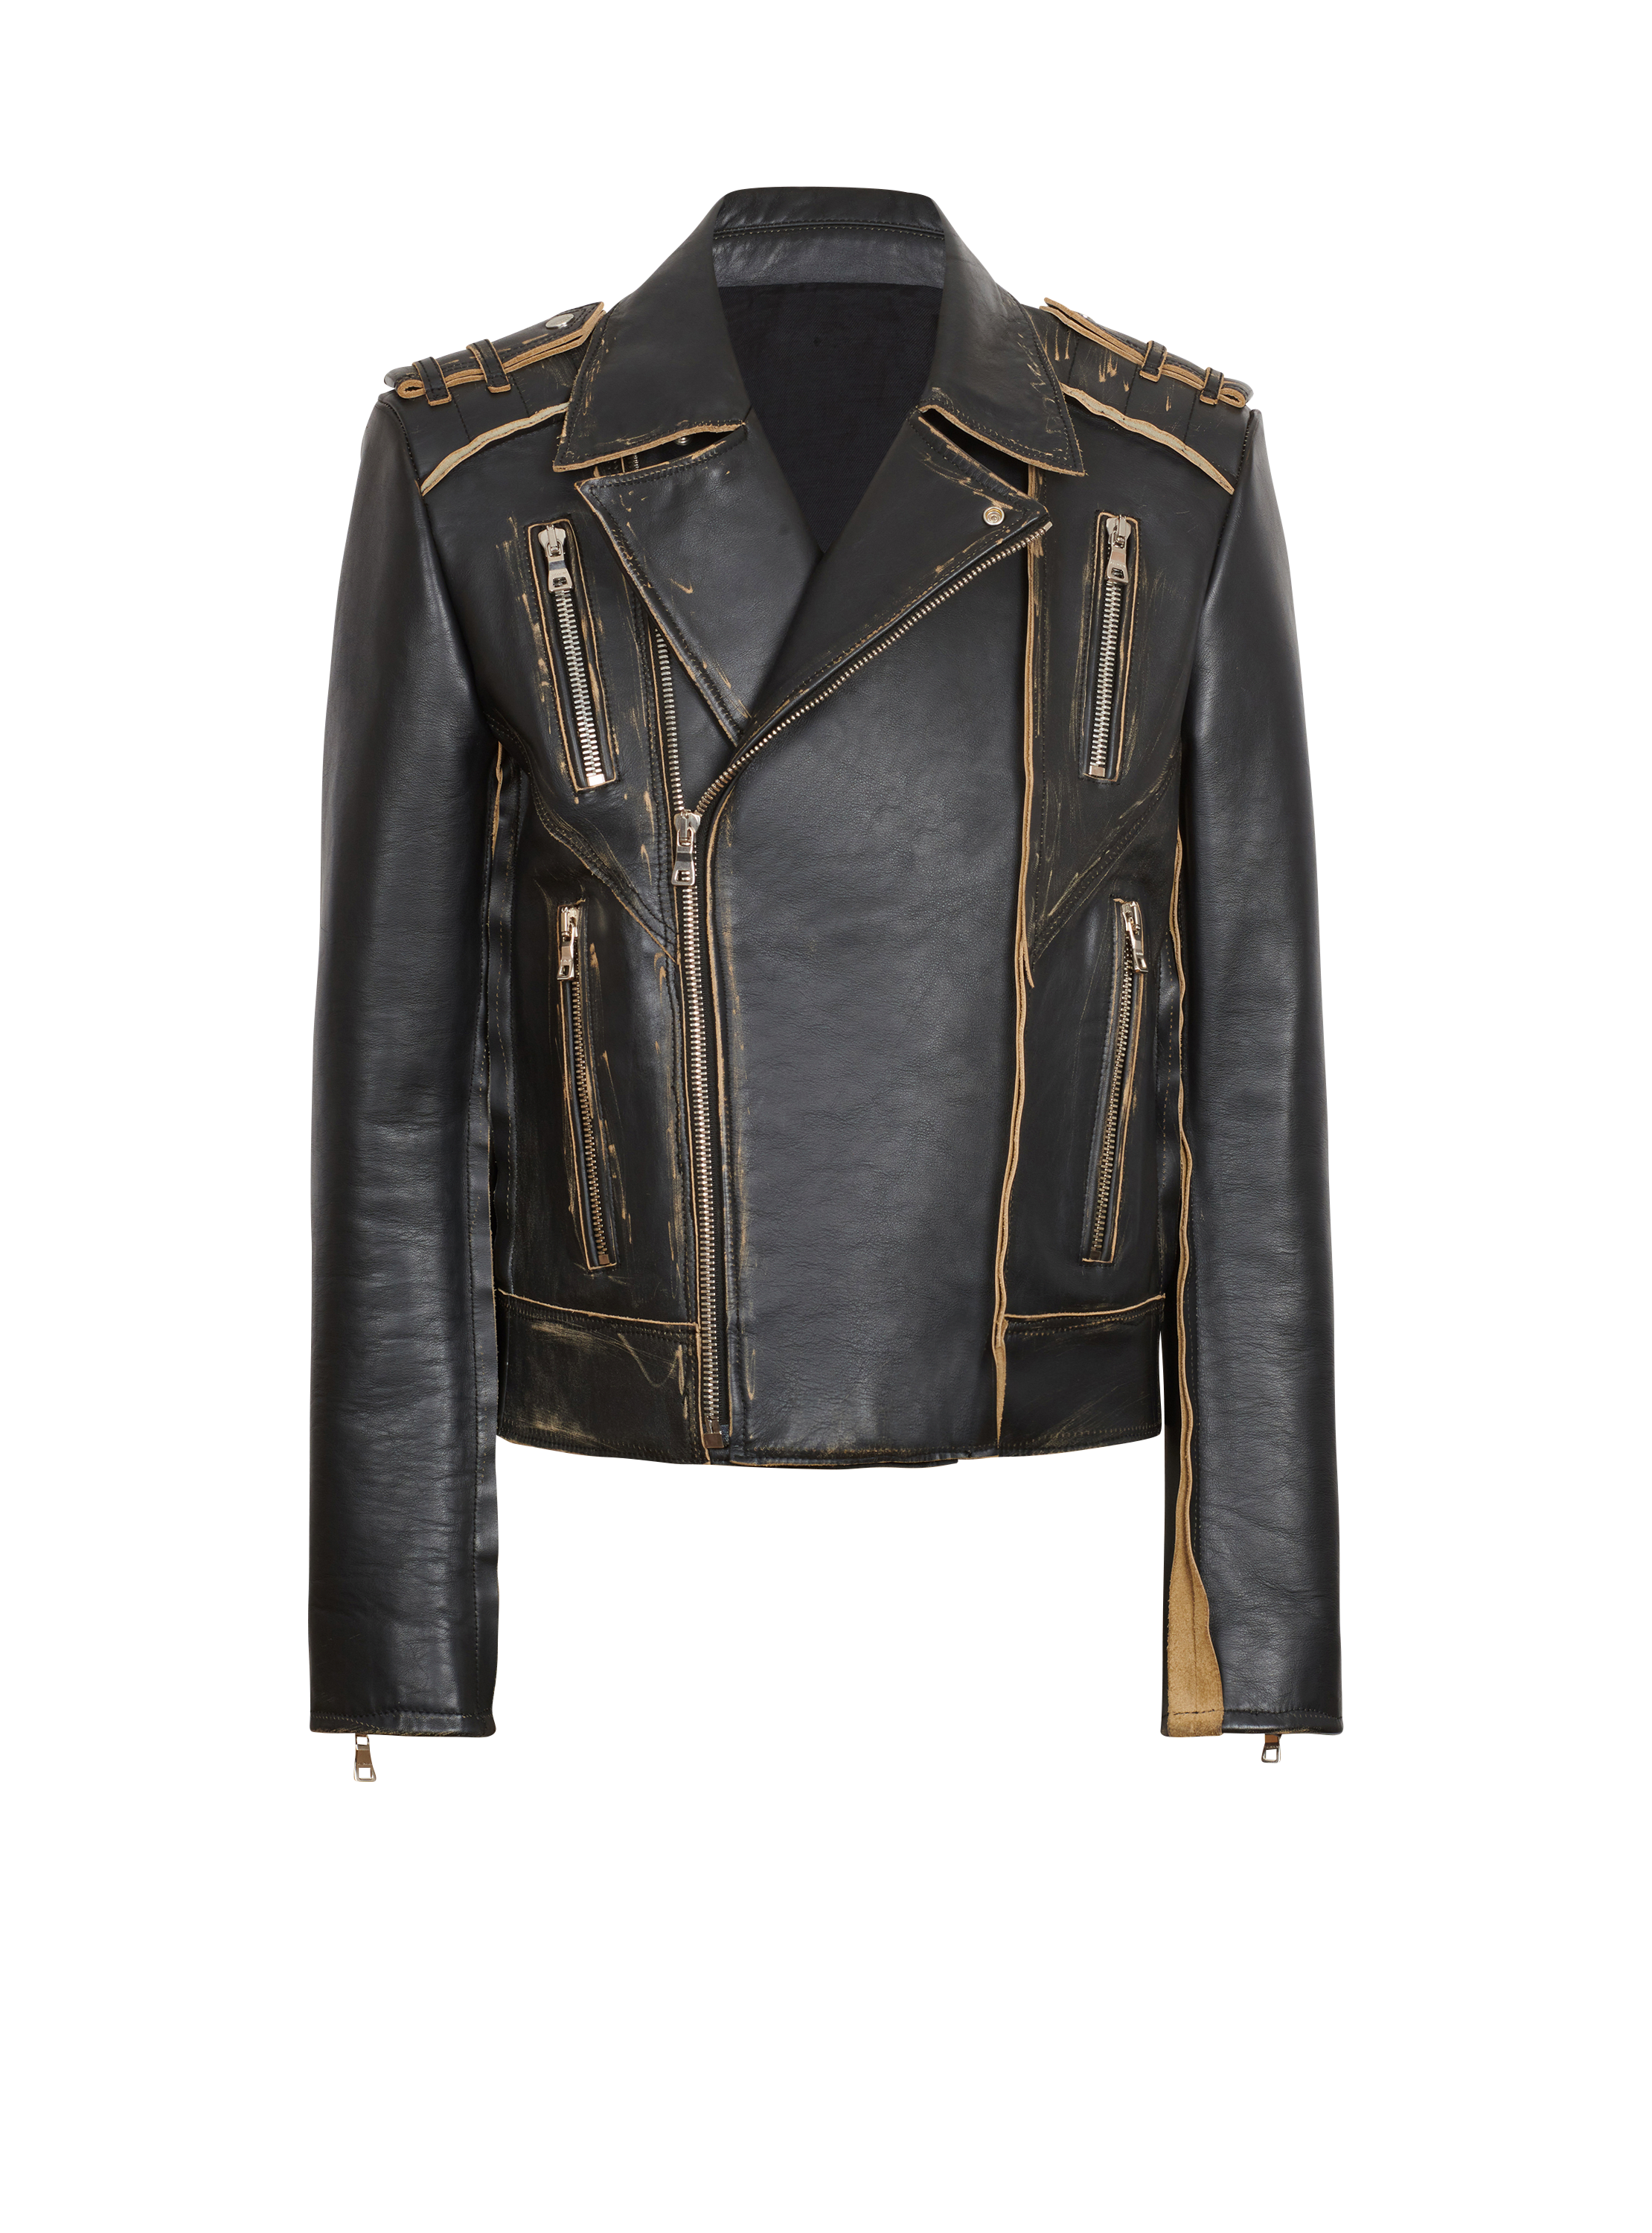 Deconstructed leather biker jacket, black, hi-res